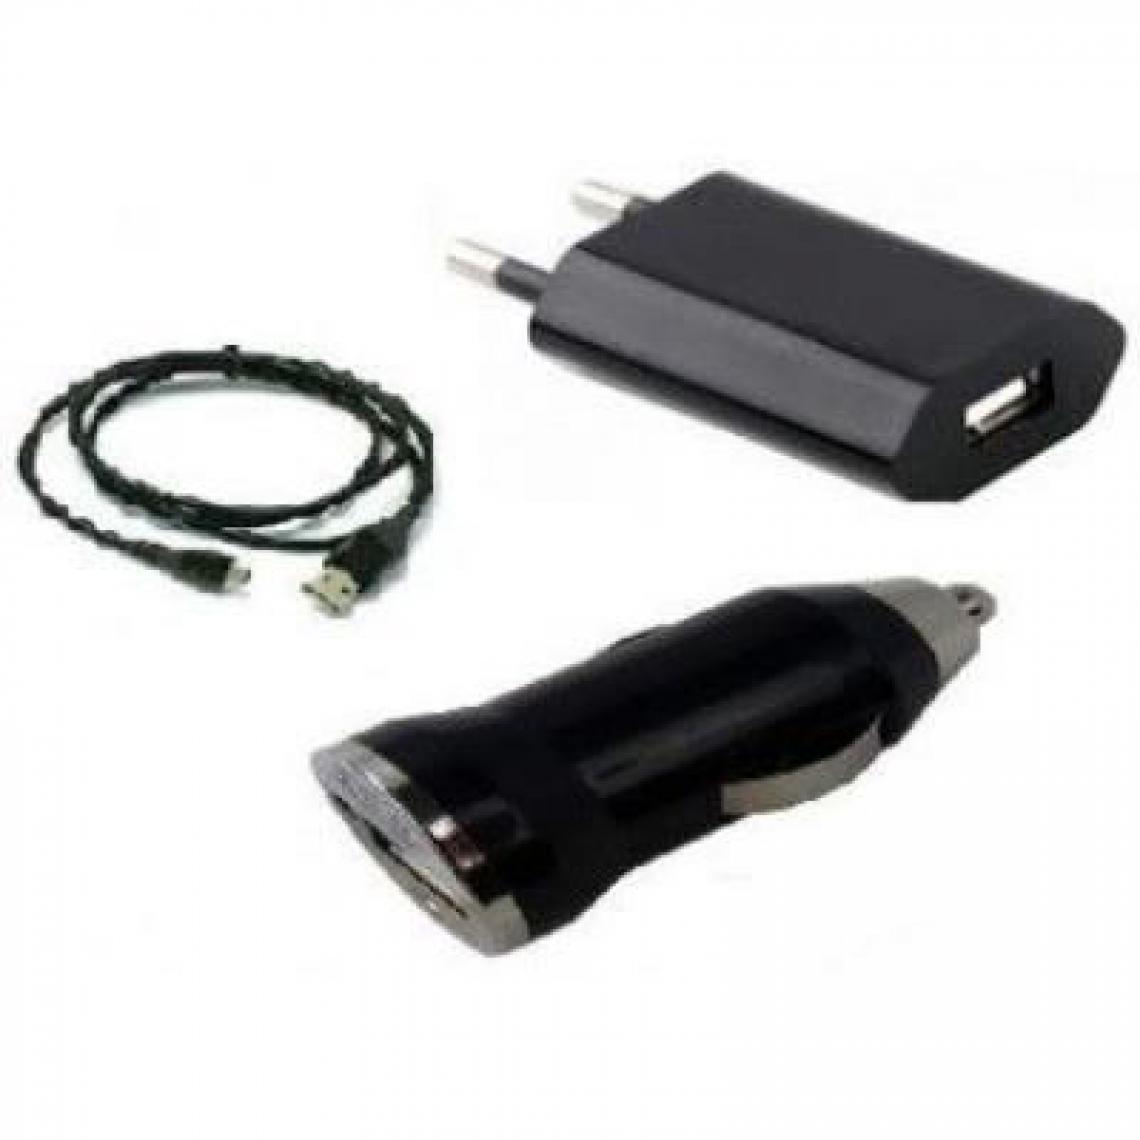 Ozzzo - chargeur secteur maison auto voiture câble dâta usb 3 en 1 noir ozzzo pour Sharp Sense3 - Batterie téléphone